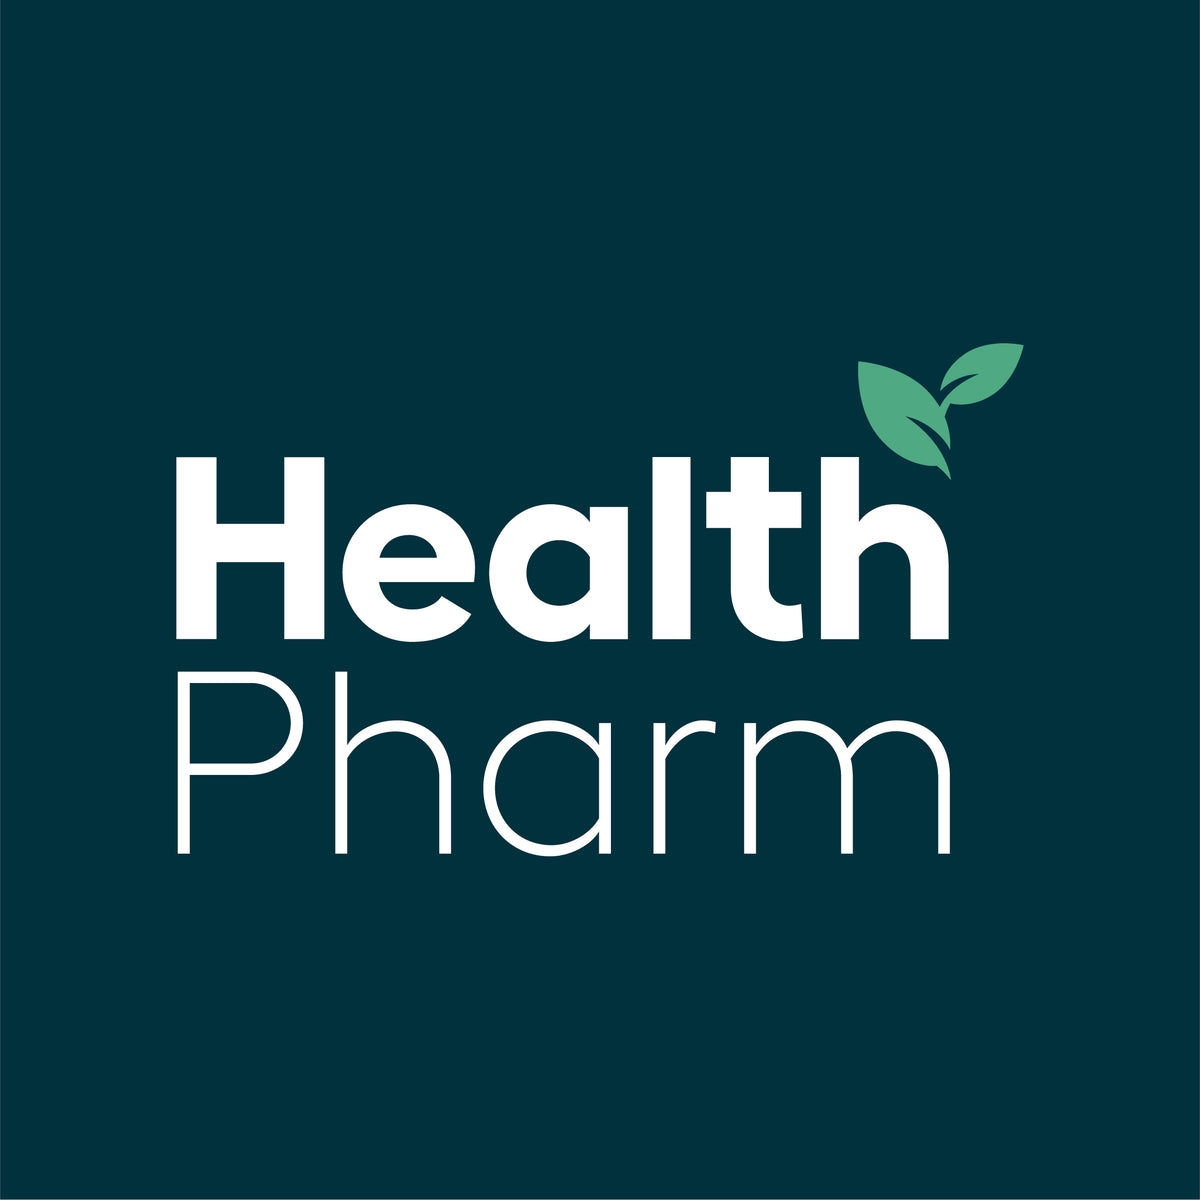 www.healthpharm.co.uk